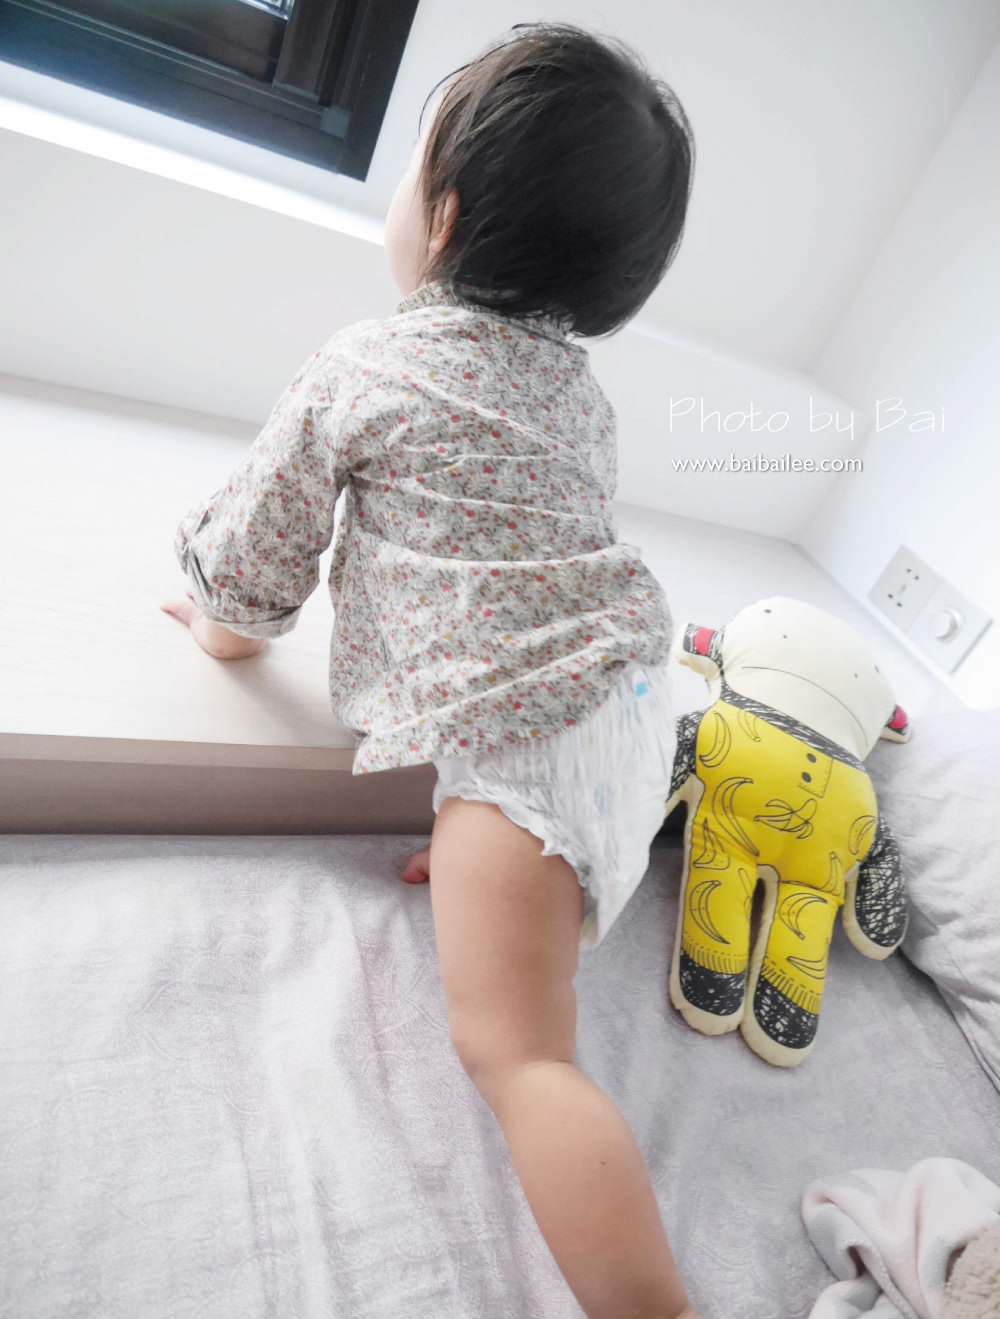 [寶寶] 幫寶適全新改款升級拉拉褲換尿布只要30秒.陪伴愛動寶寶舒服長大